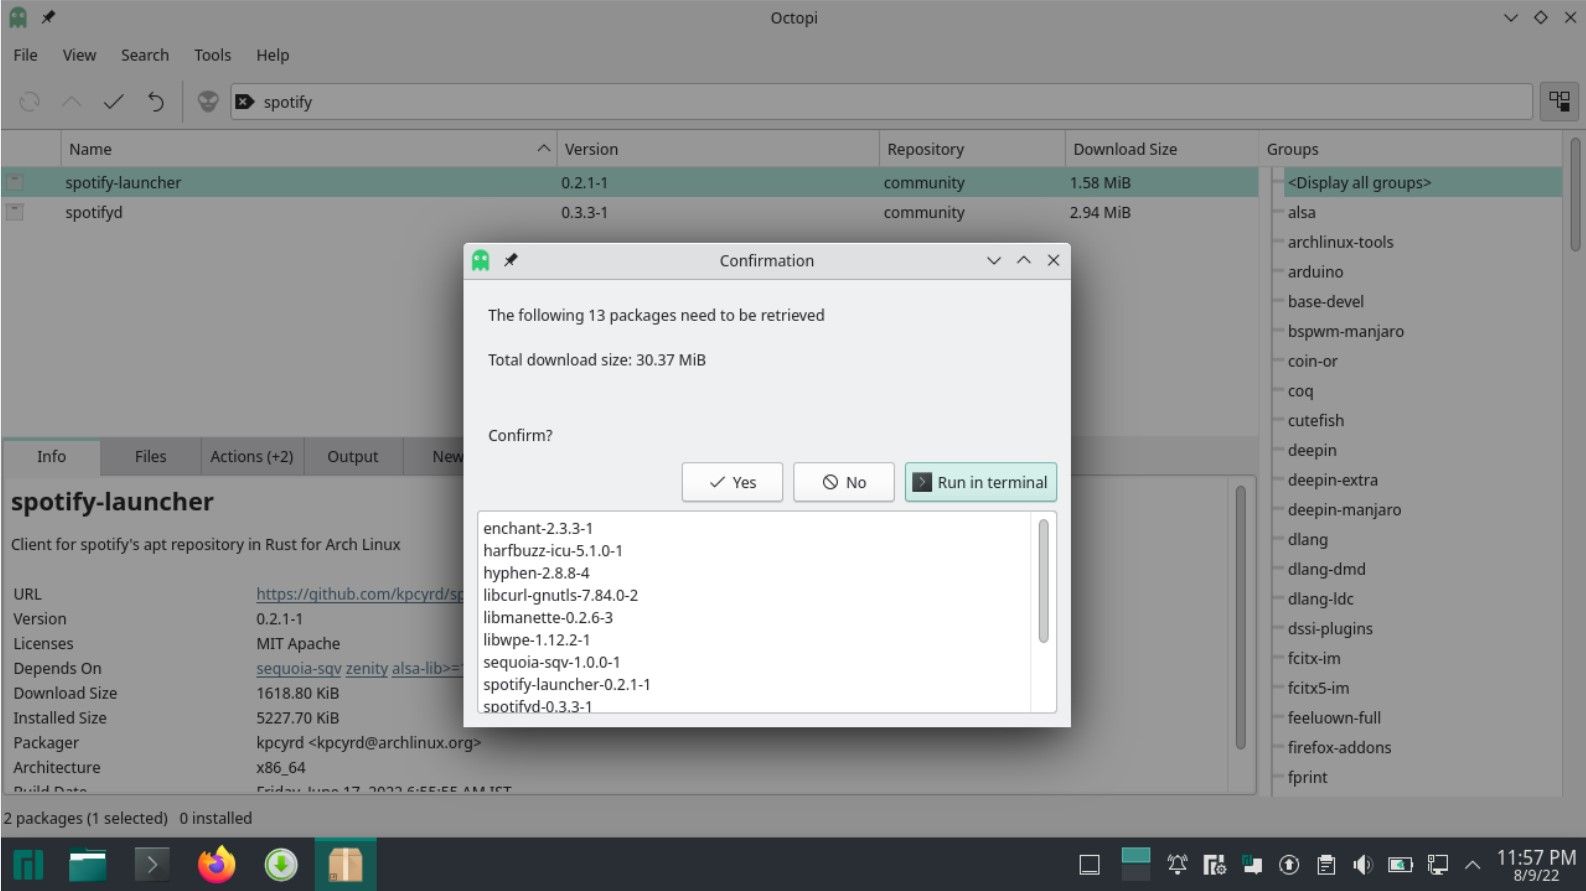 Octopi interface in Manjaro KDE Plasma